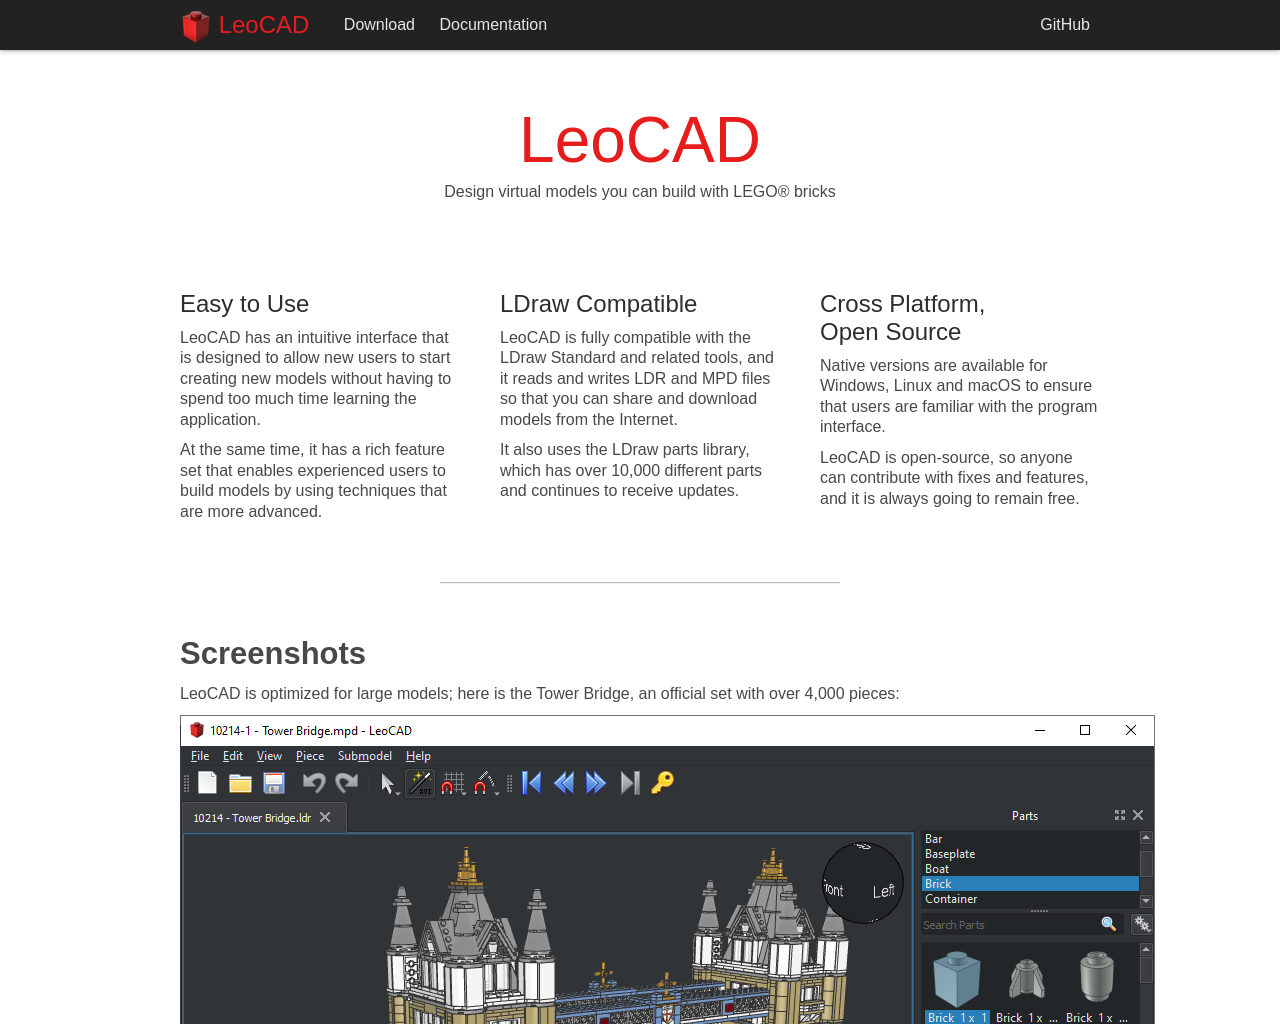 leocad.org